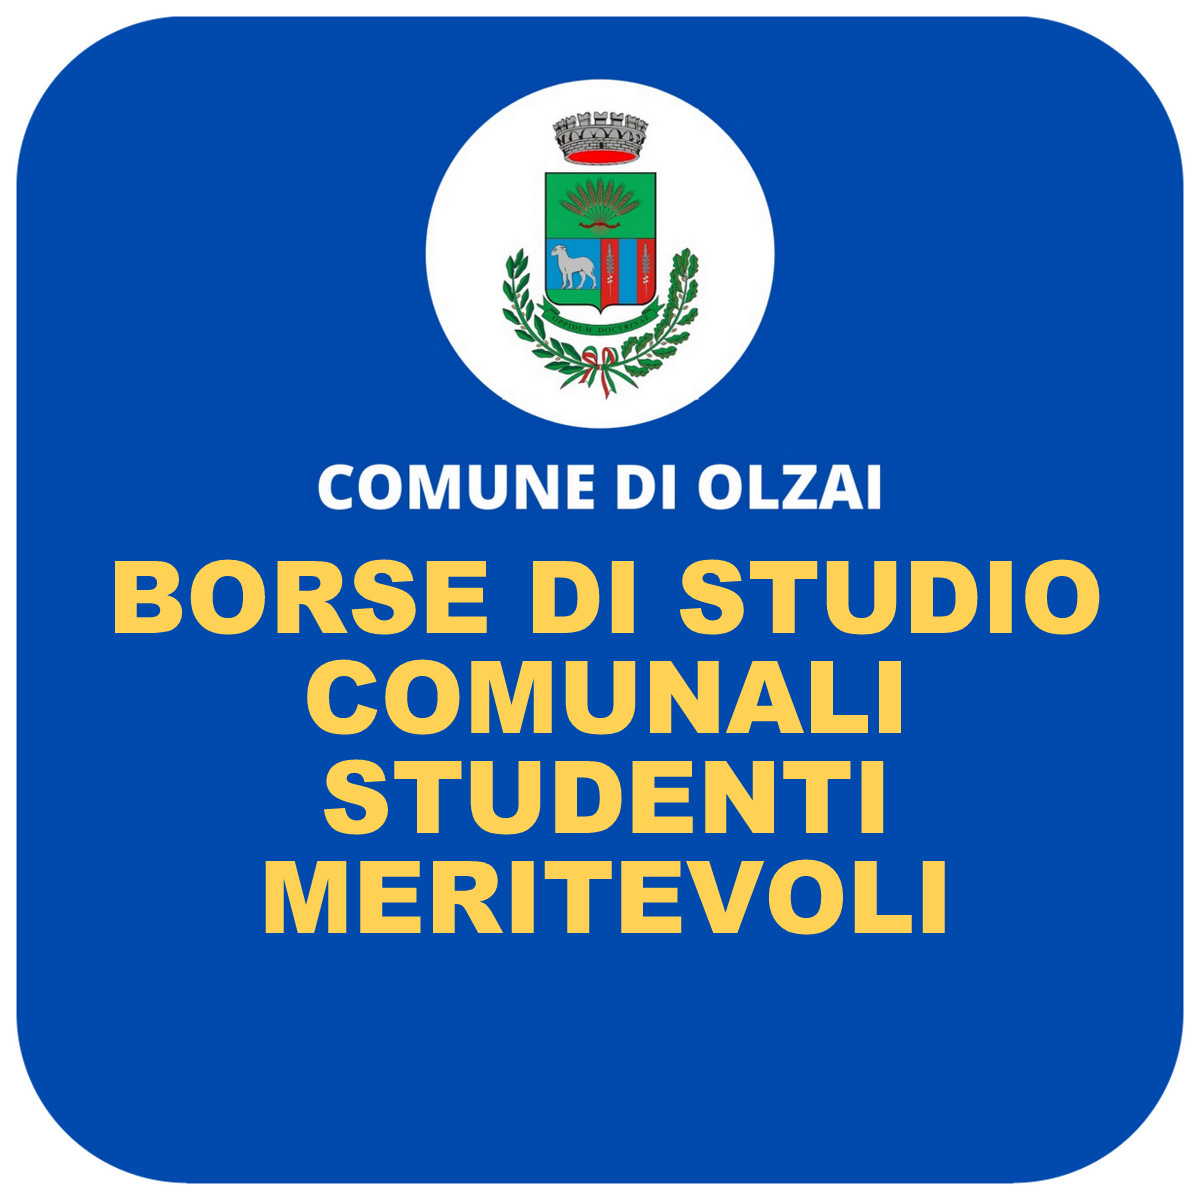 ASSEGNAZIONE BORSE DI STUDIO COMUNALI - STUDENTI MERITEVOLI